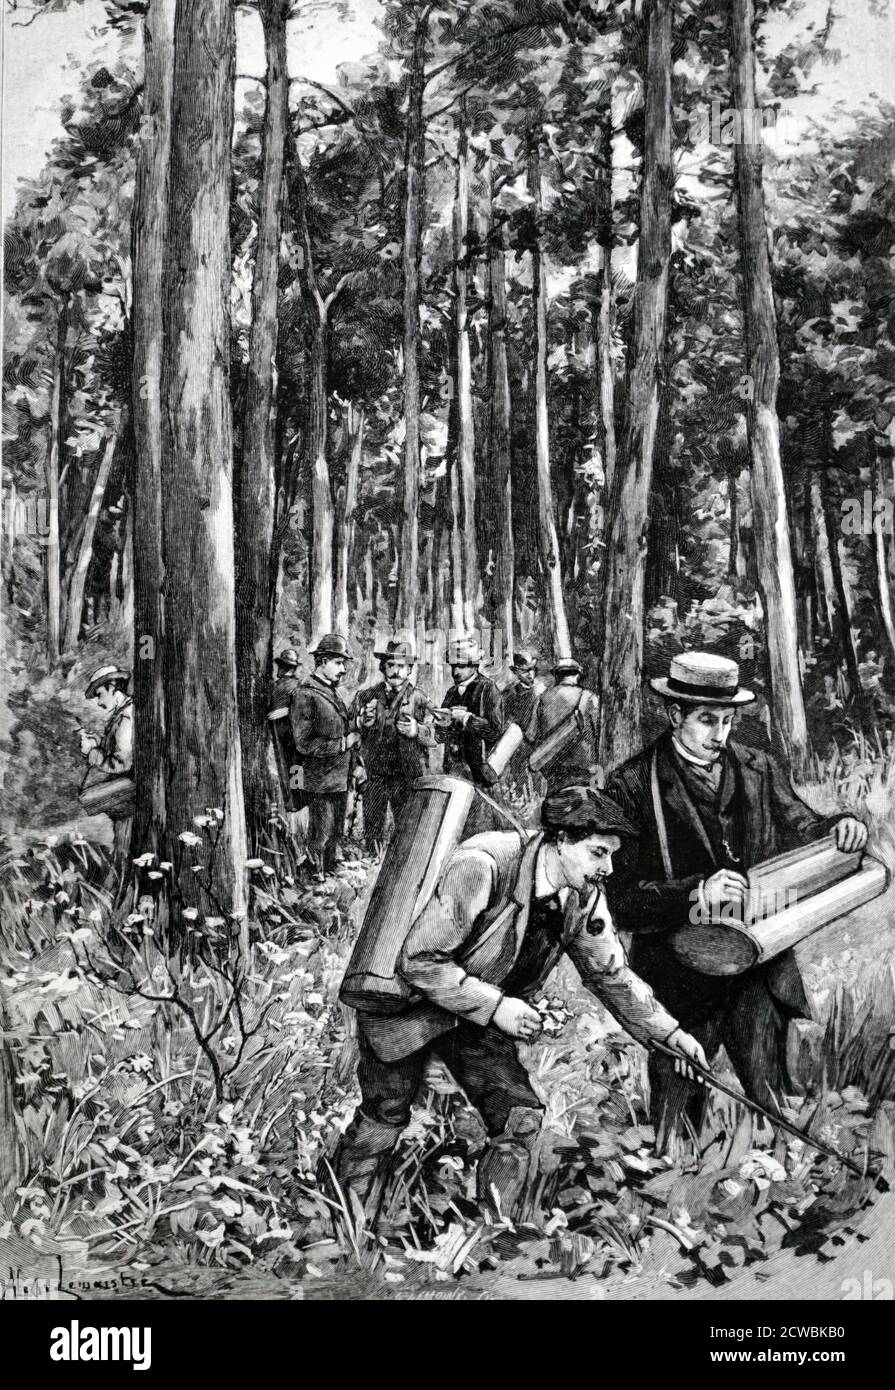 Incisione raffigurante studenti della Sorbona raccolta di esemplari botanici durante un viaggio sul campo nella Foresta di Fontainebleau. Foto Stock